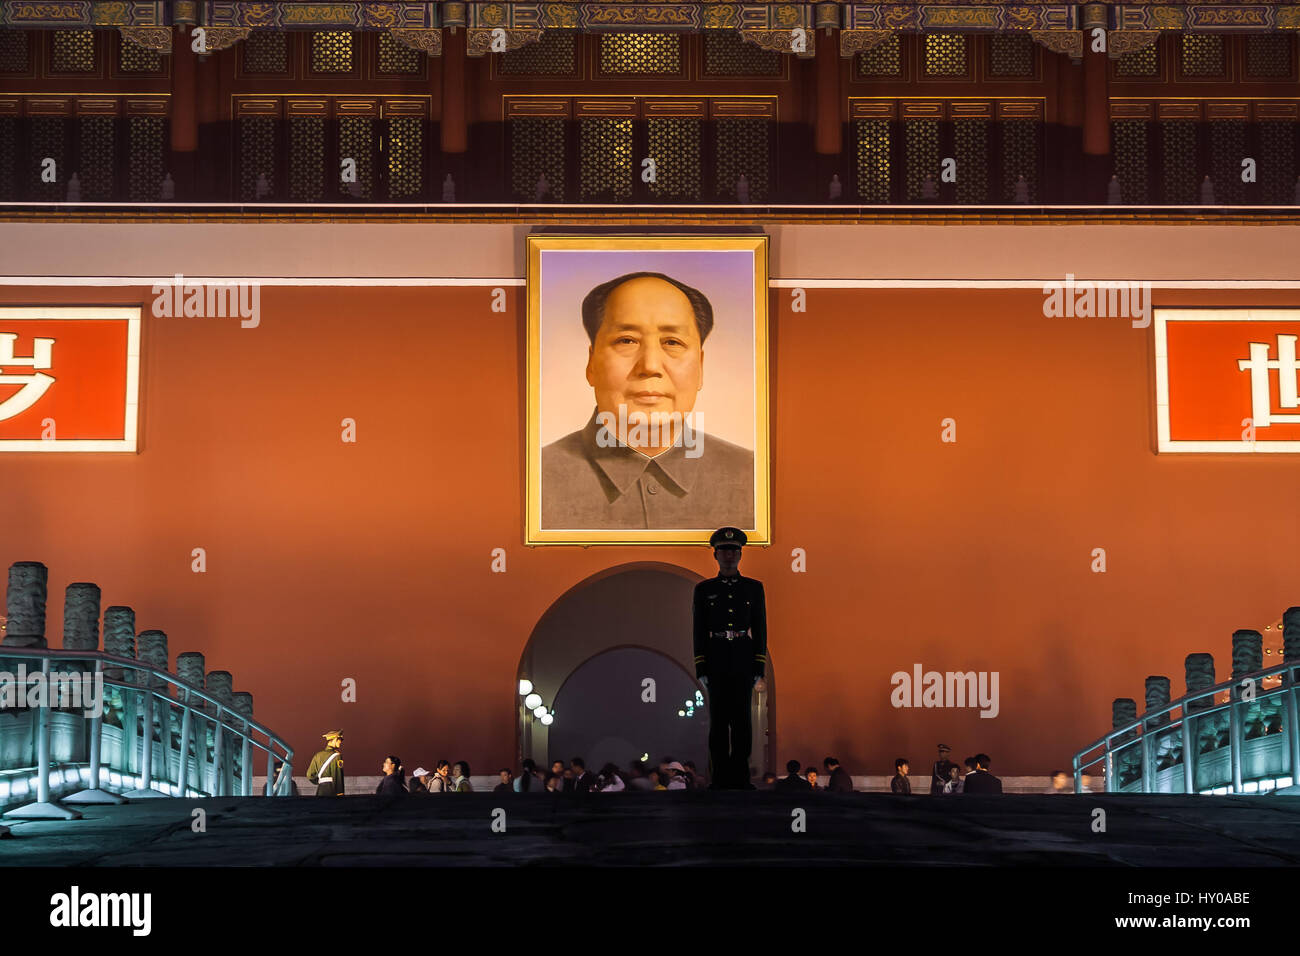 La porte Tiananmen dans la nuit avec un portrait de Mao et soldat qui monte la garde, la Cité Interdite, Pékin, Chine. Stock photo d'un soldat en silhouette désert mon amour Banque D'Images